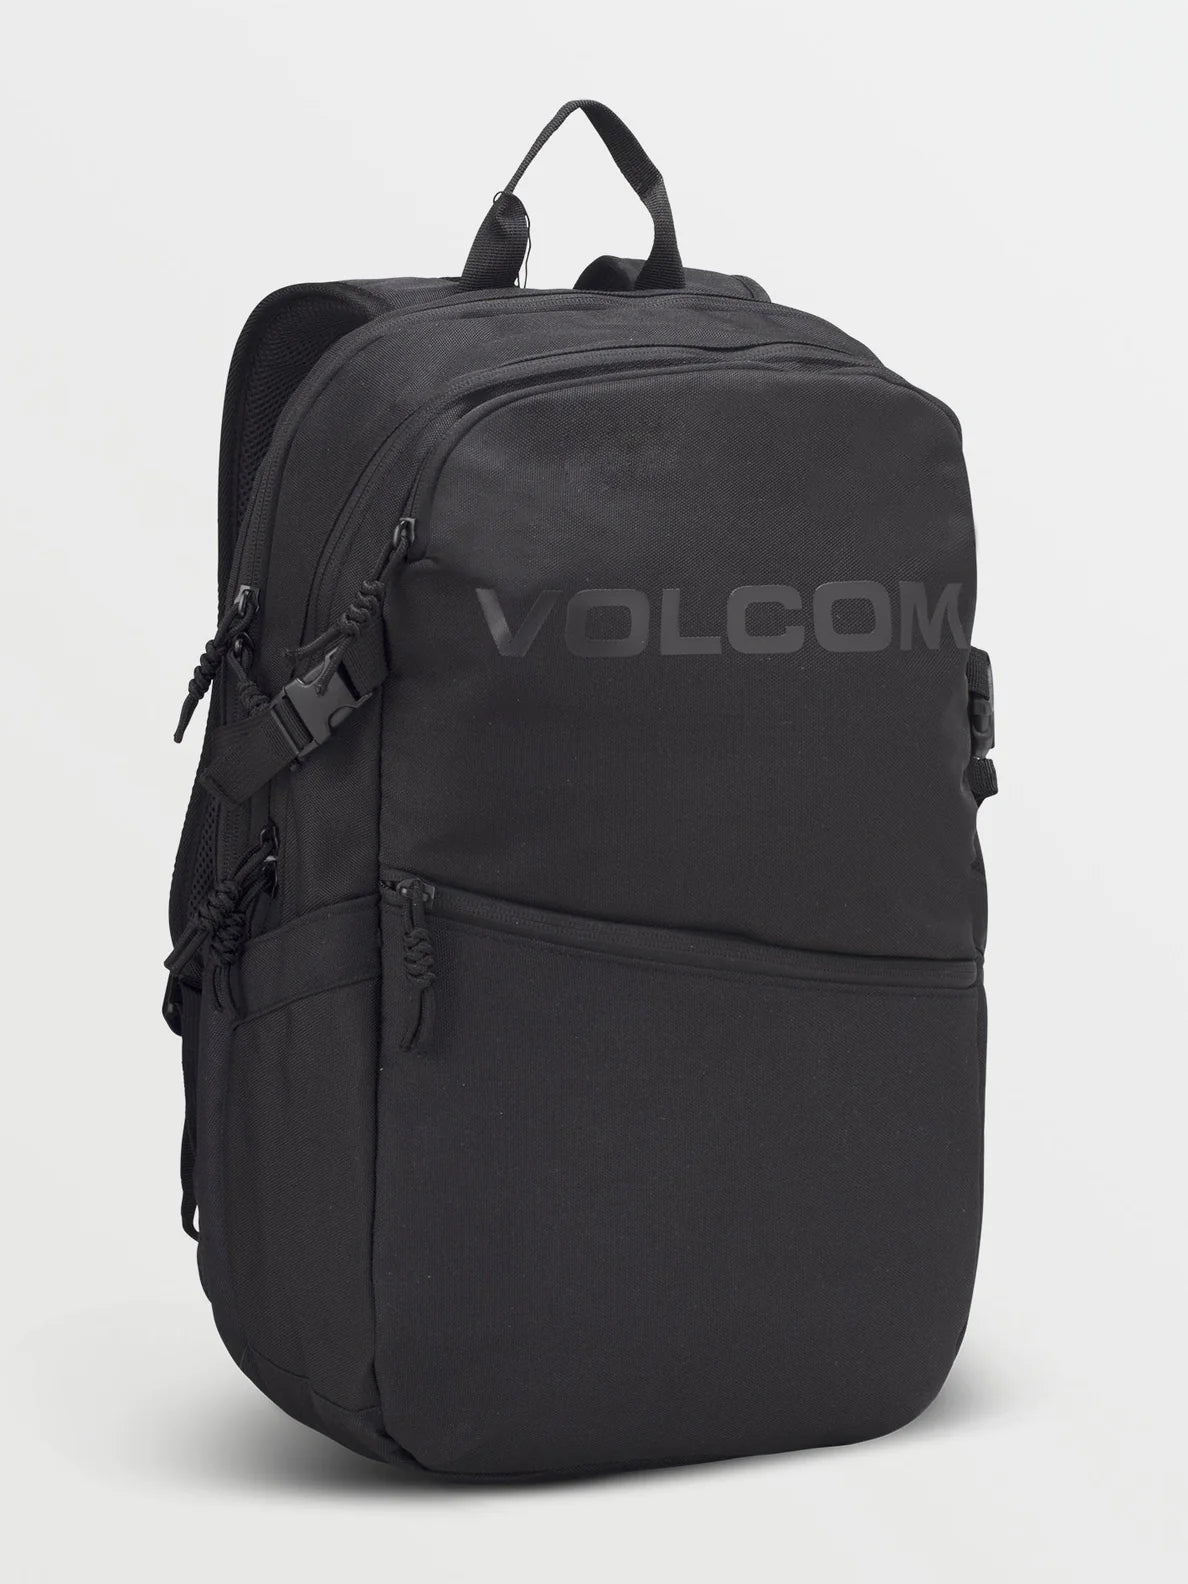 Mochila Volcom Roamer Backpack - Black